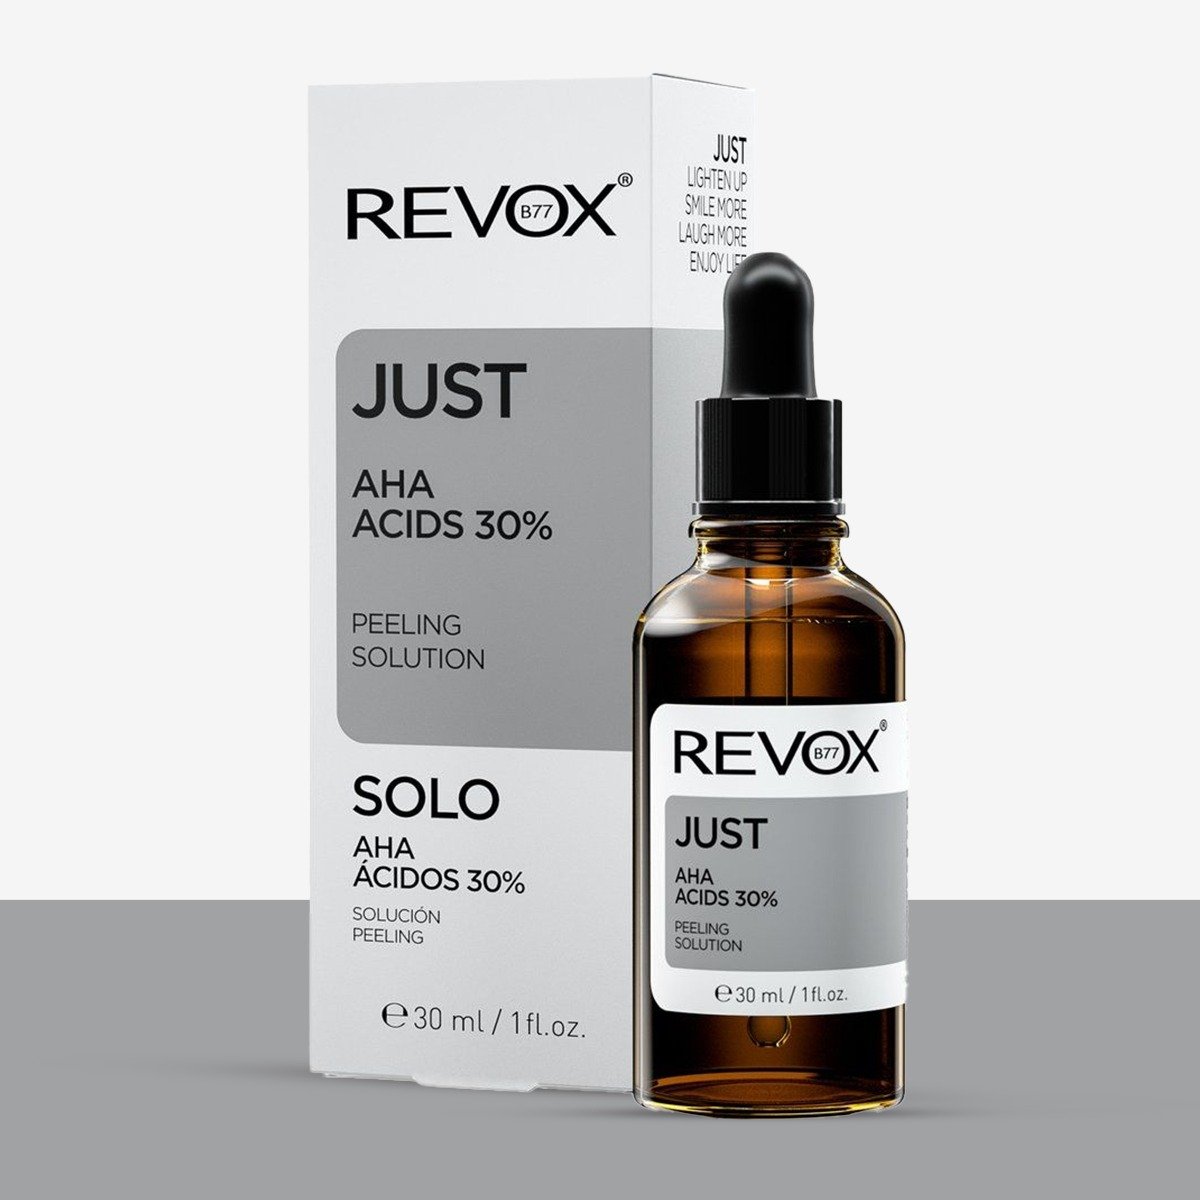 Revox Just AHA Acids 30% Peeling Solution Serum 30ml